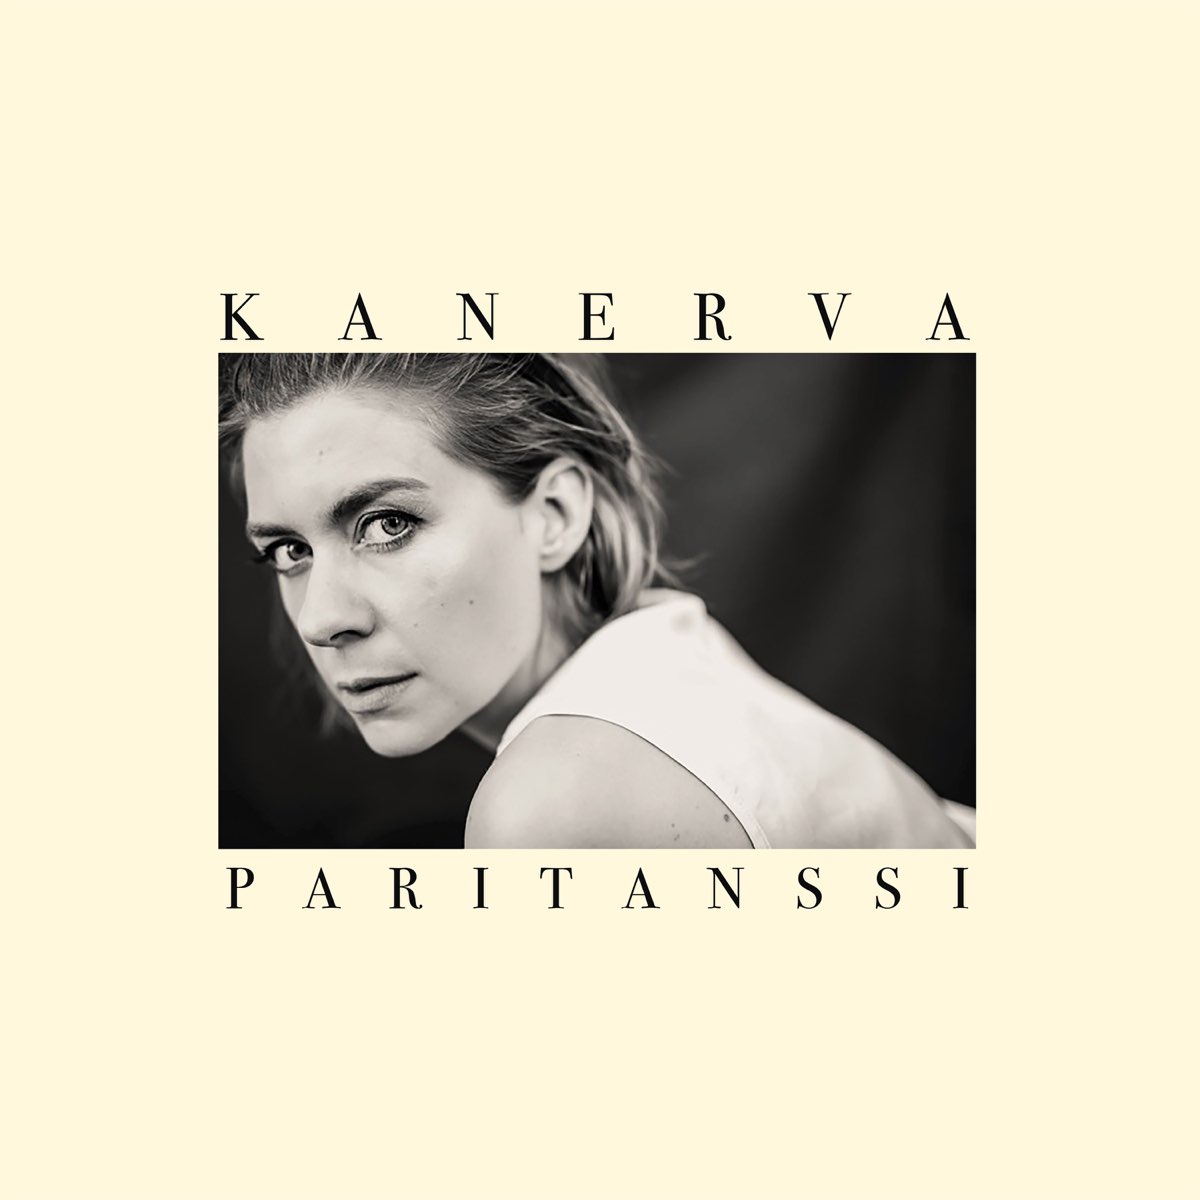 Paritanssi - Album by Kanerva - Apple Music